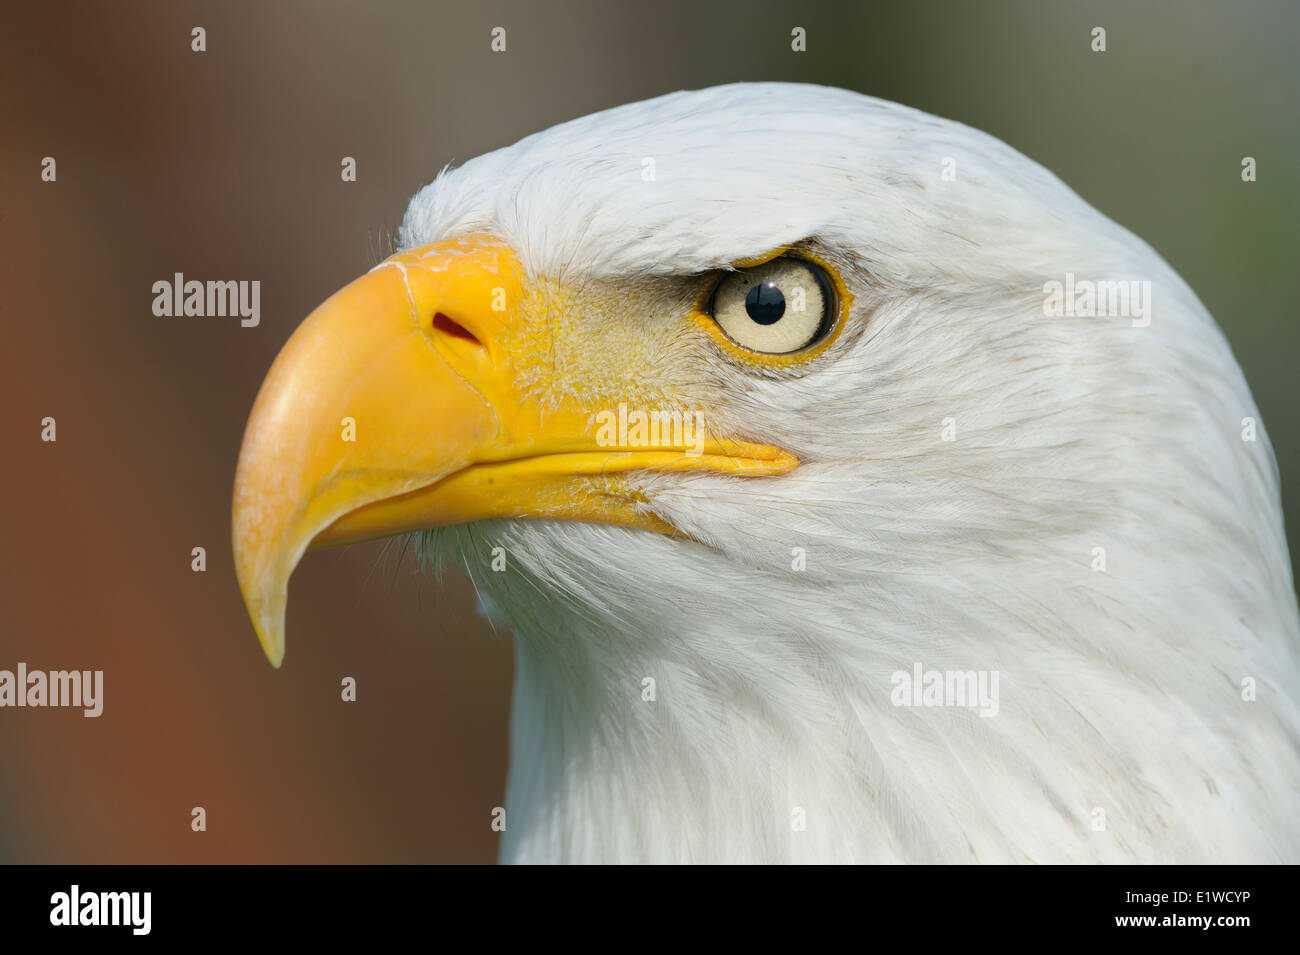 Bald eagle, Portrait, Stock Photo